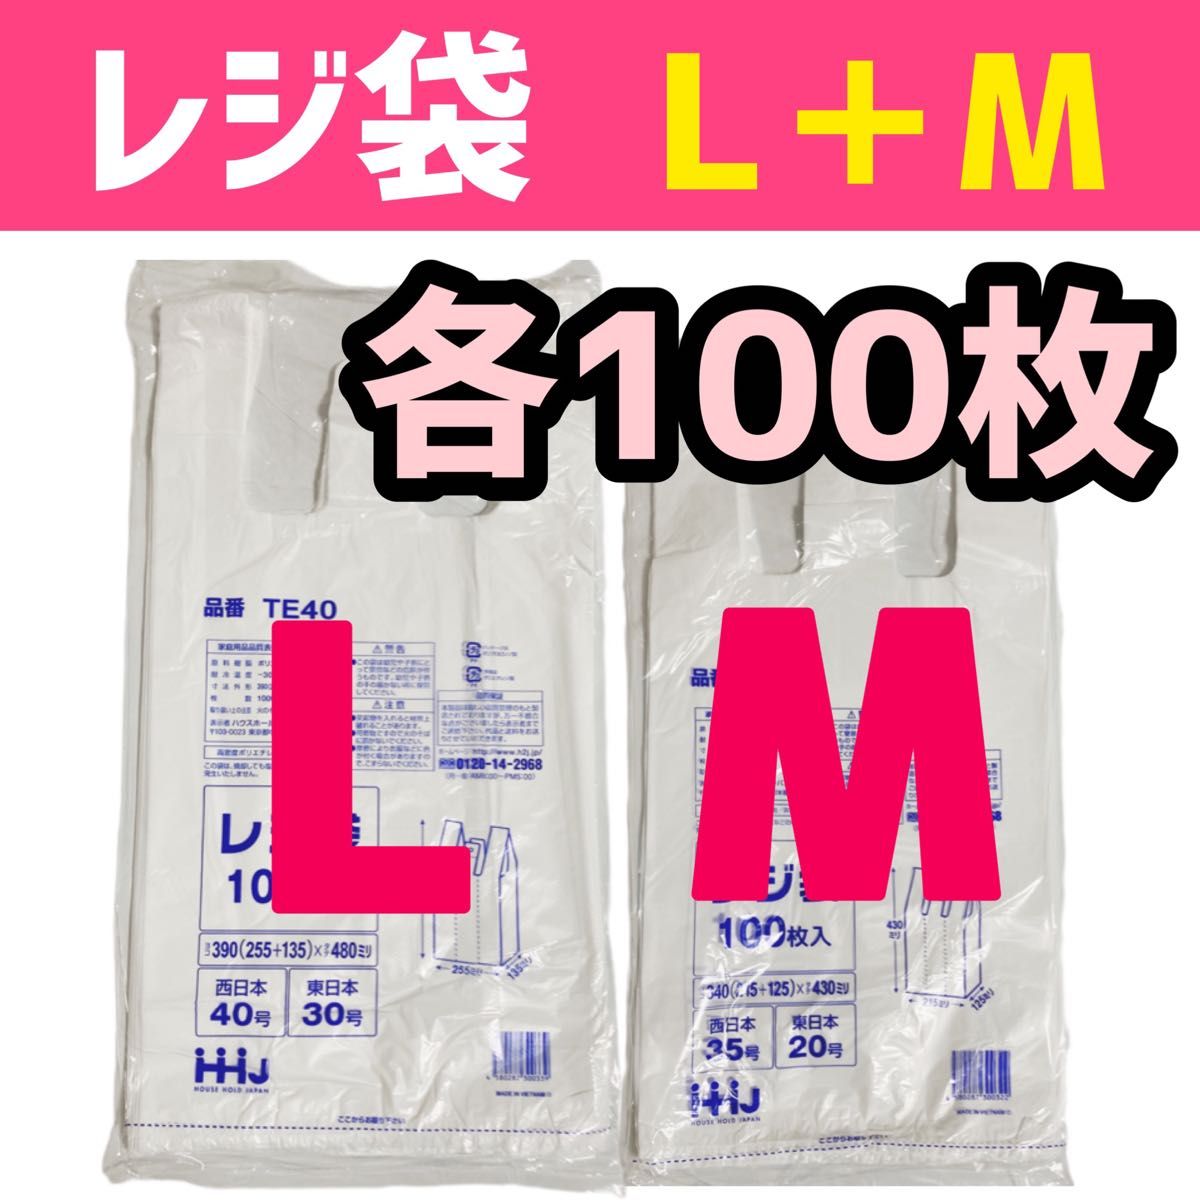 レジ袋 Lサイズ+Mサイズ 各100枚 200枚セット 乳白色 HHJ TE40 + TE35